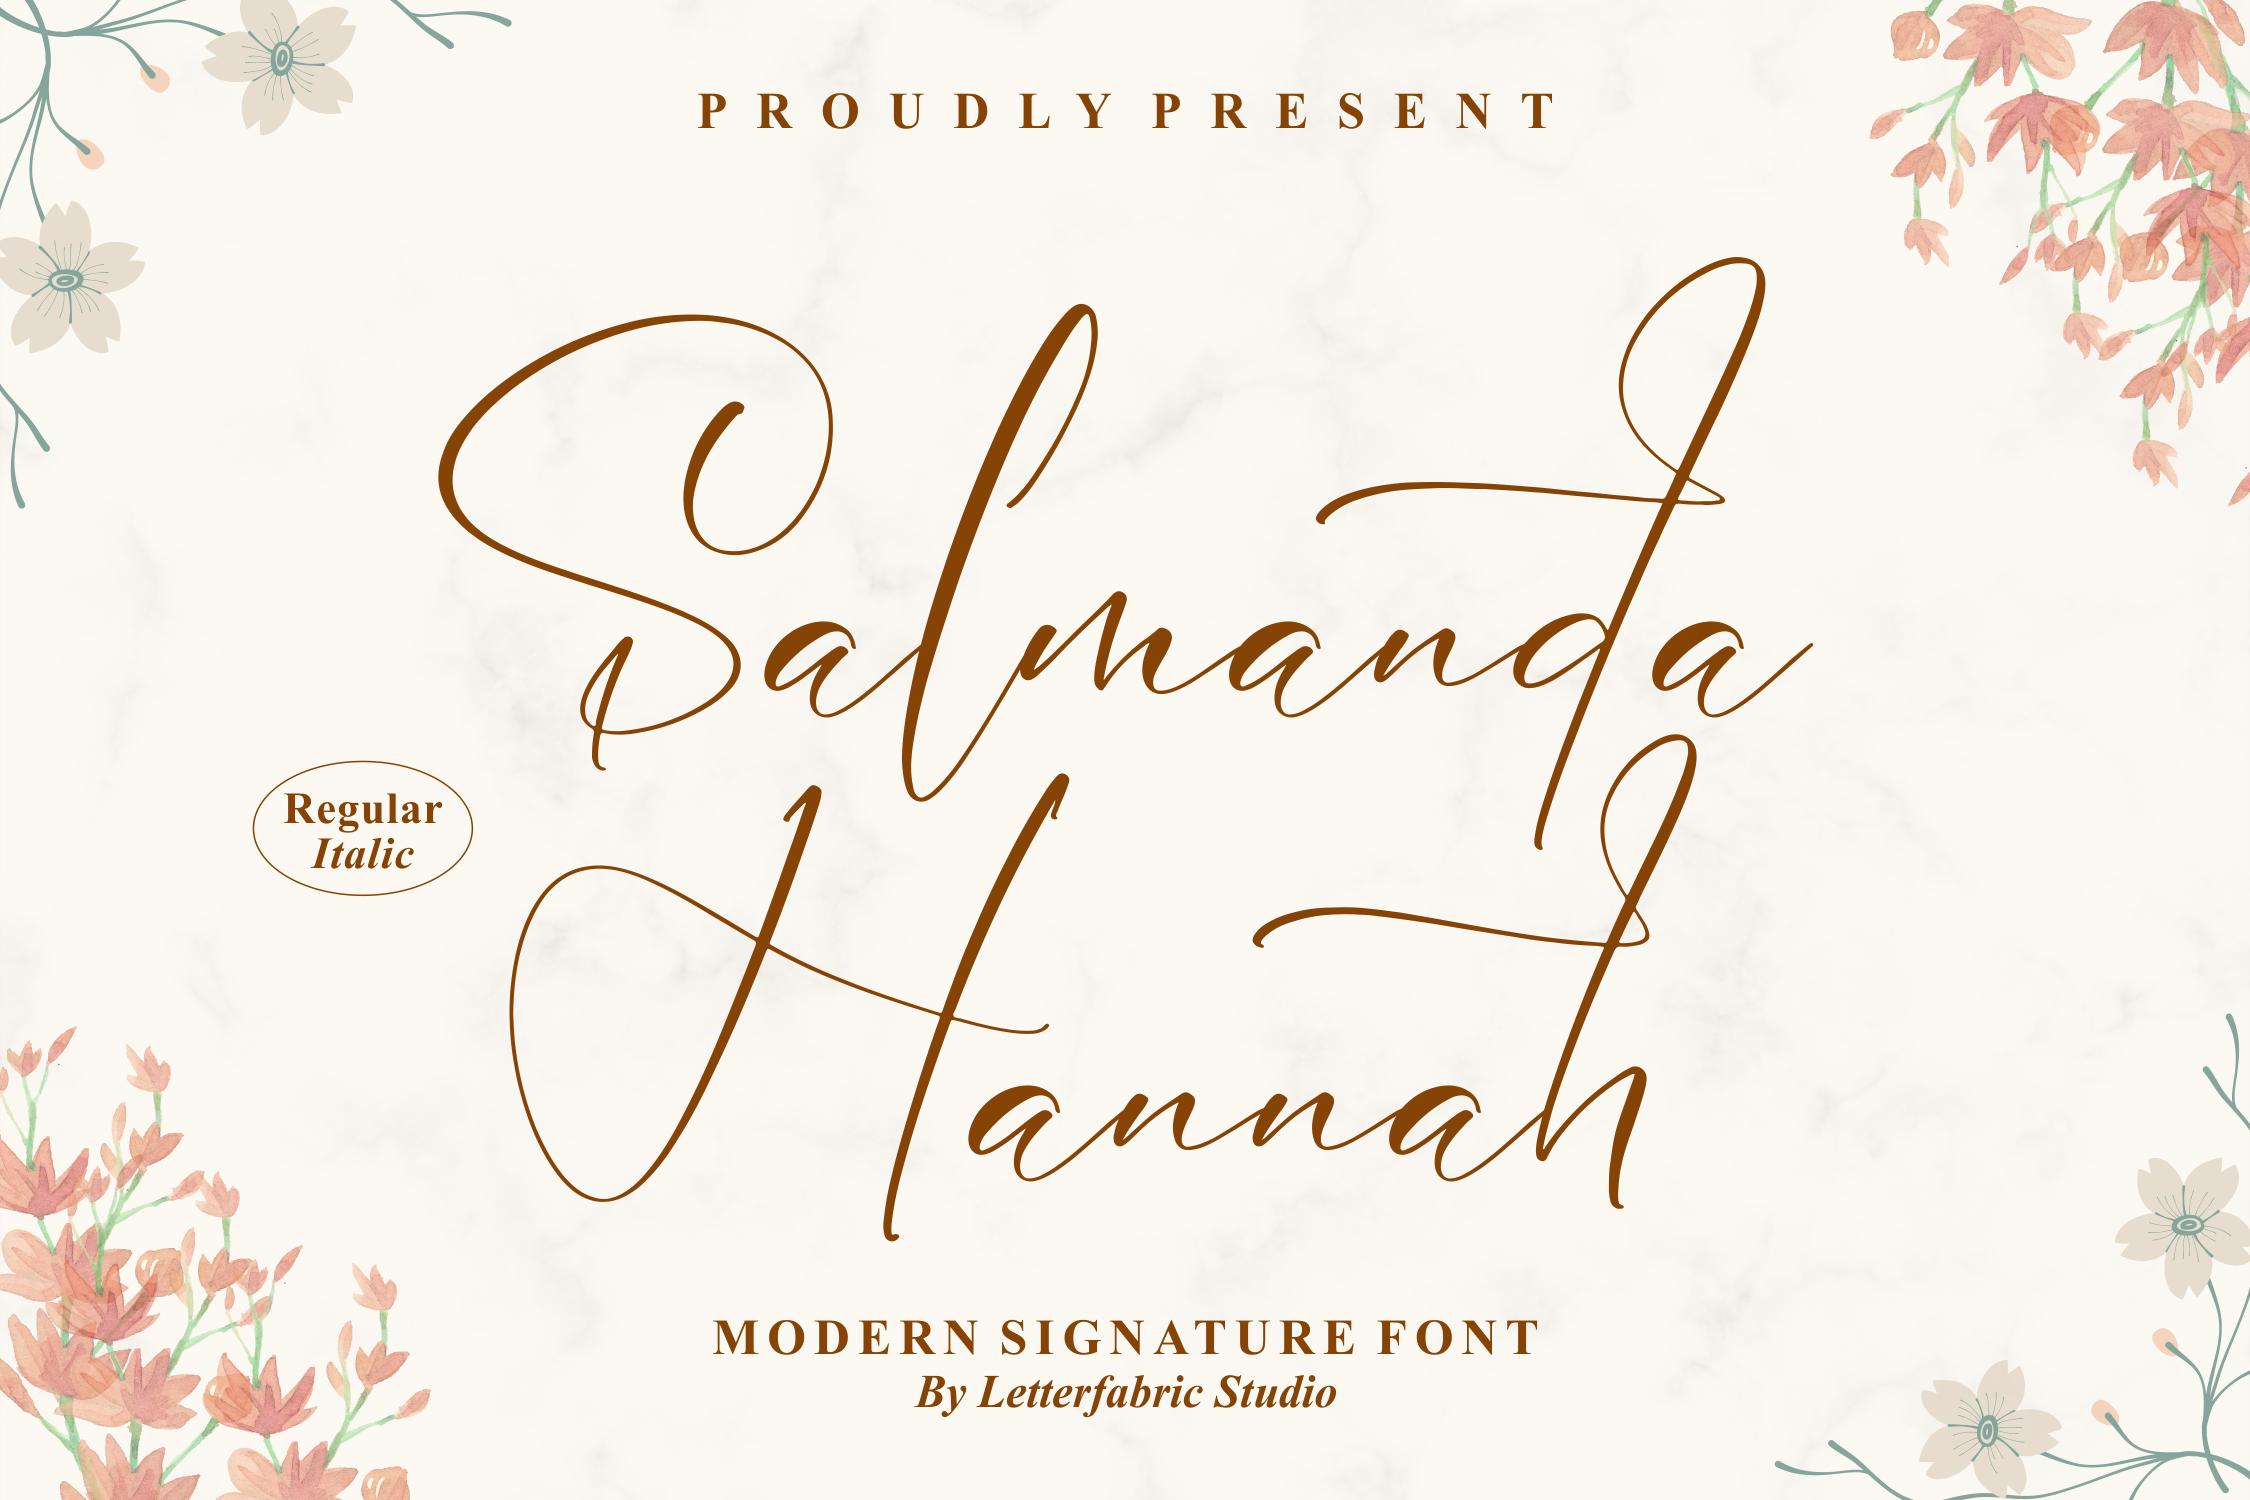 Salmanda Hannah Font Free & Premium Download